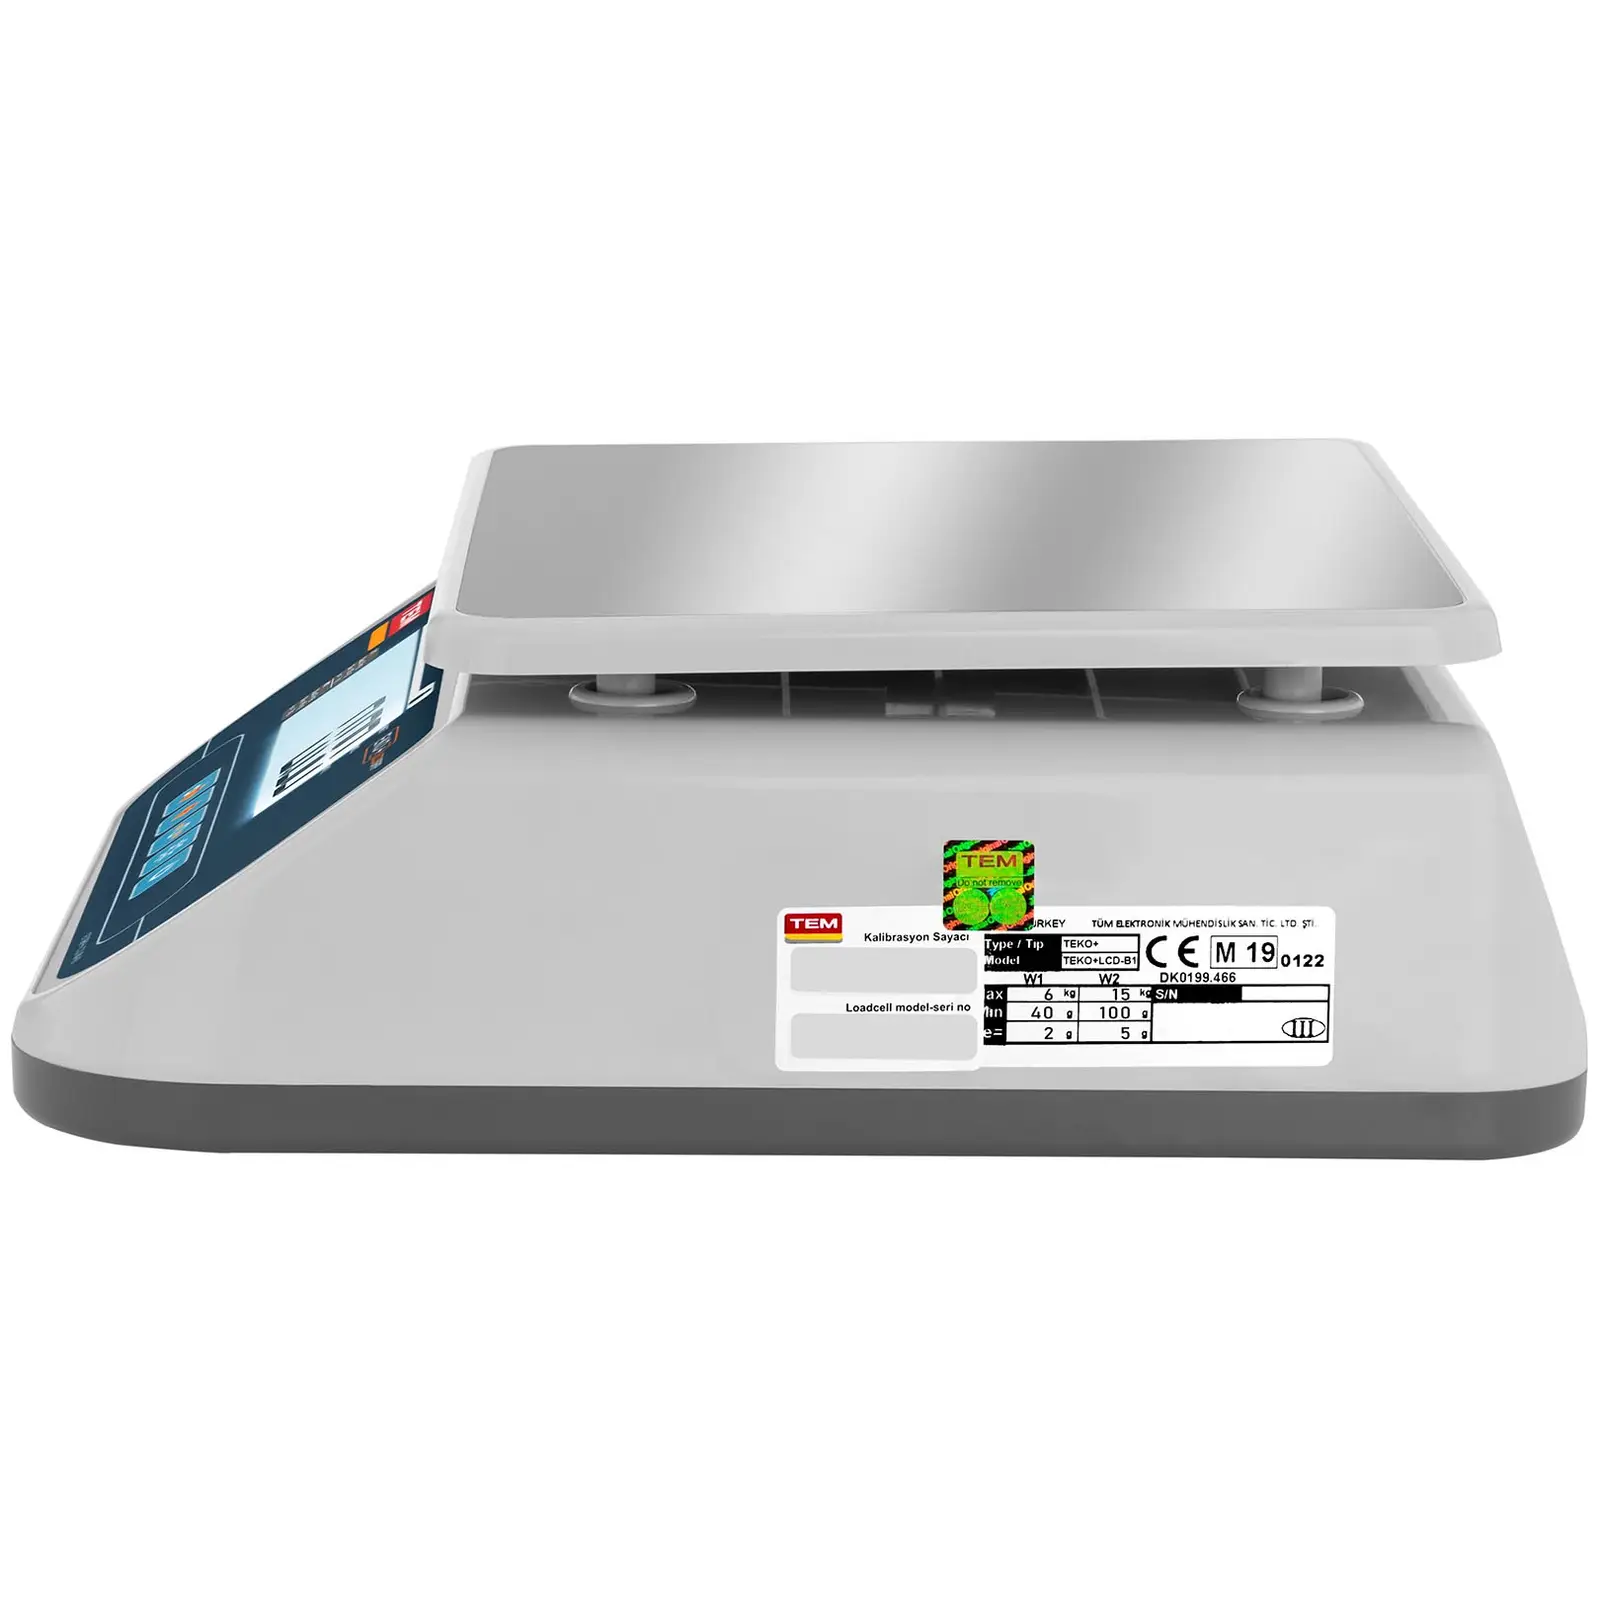 Asztali mérleg - hitelesített - 15 kg/5 g - Dual LCD